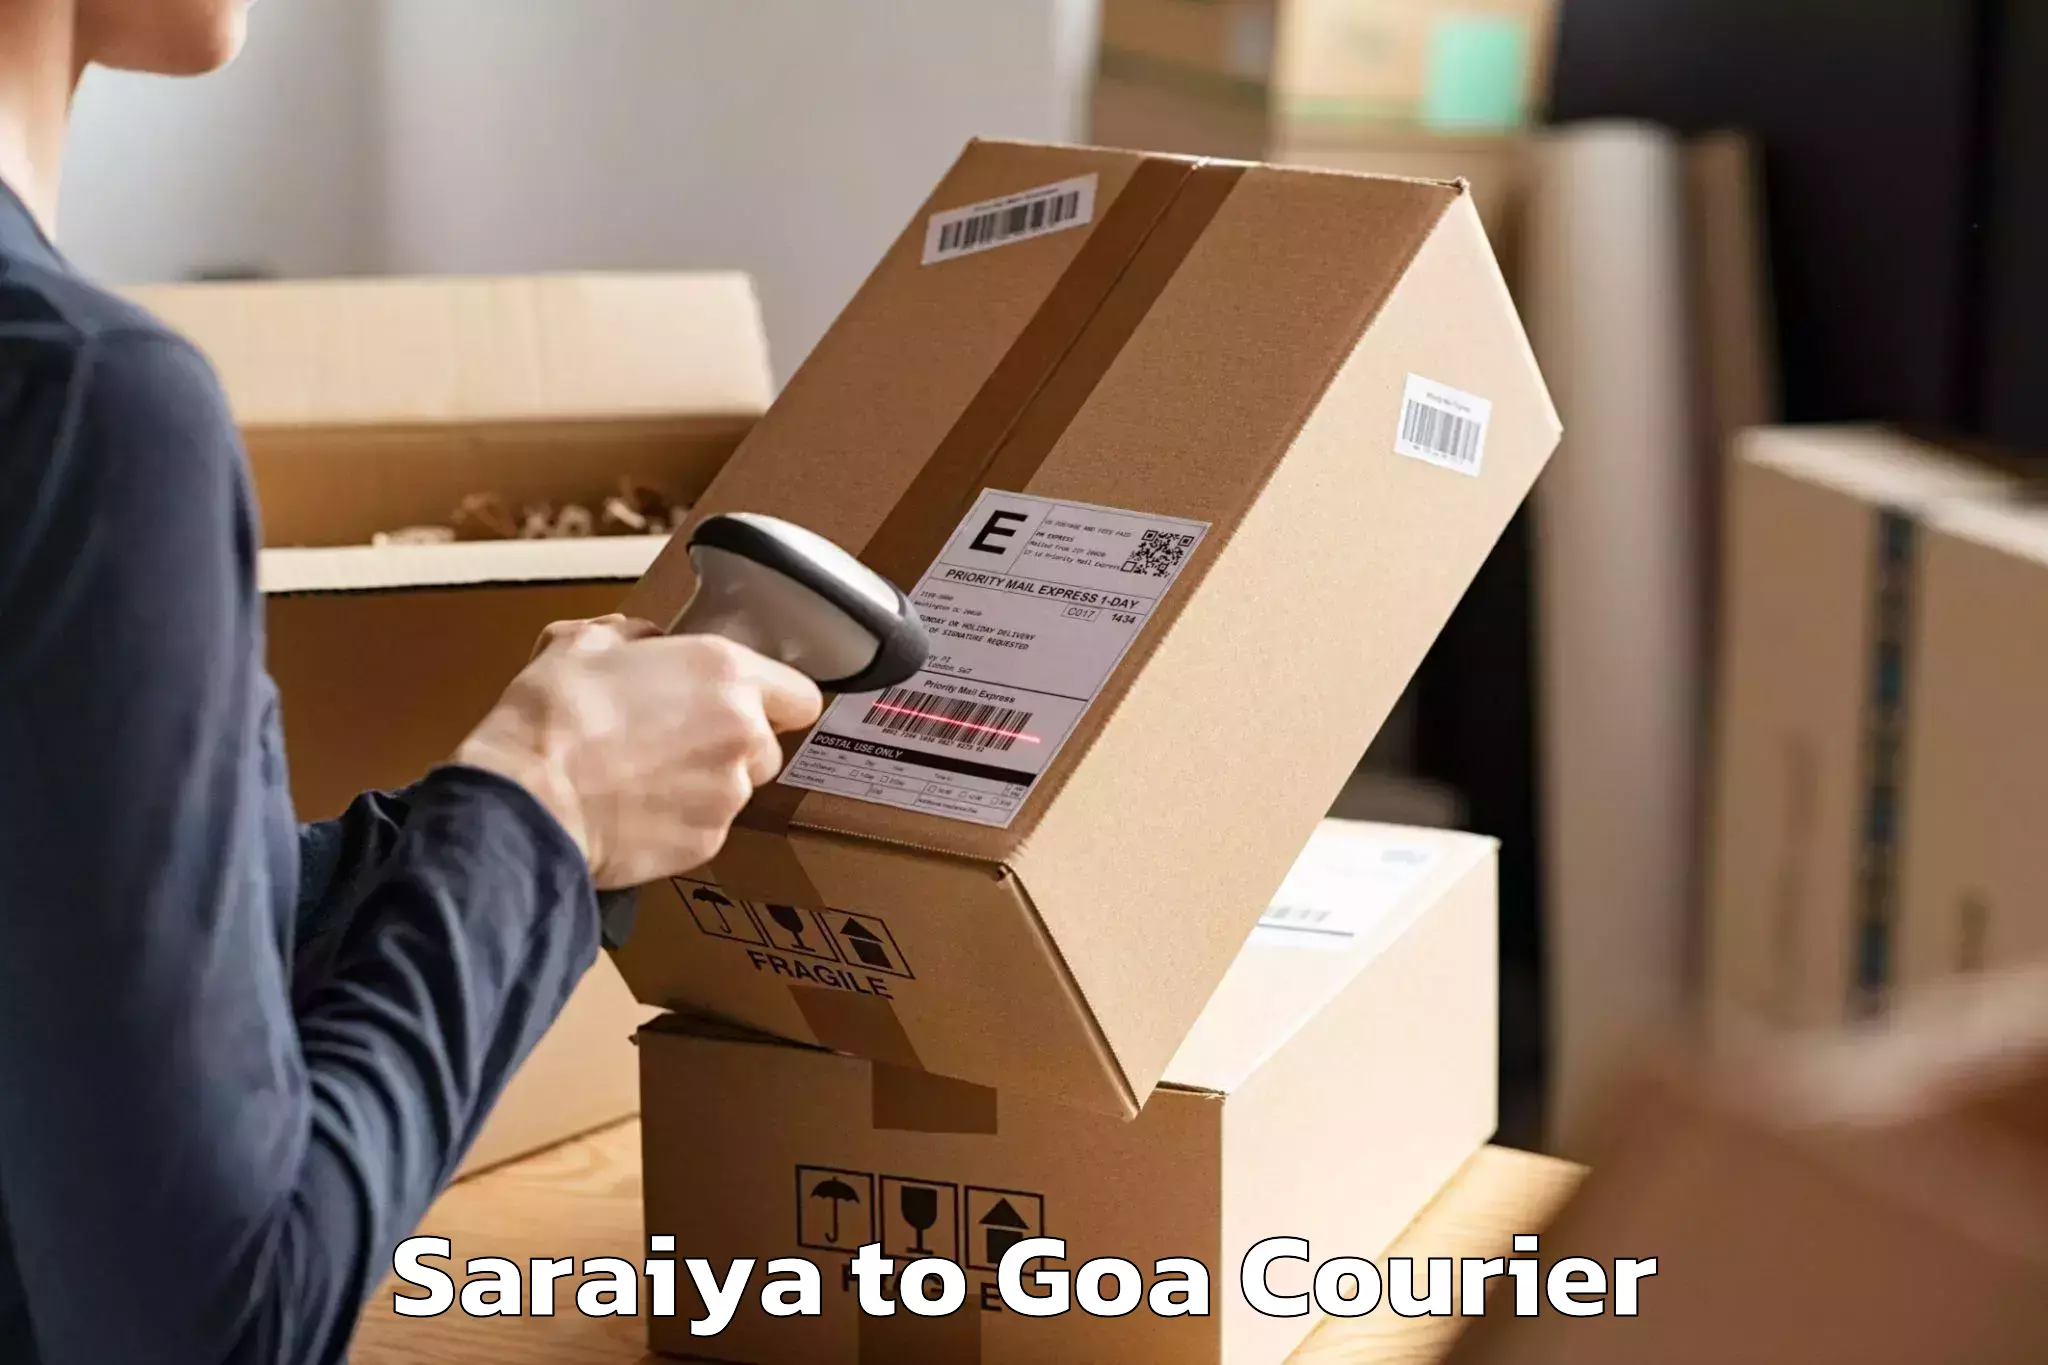 Furniture transport and storage Saraiya to NIT Goa